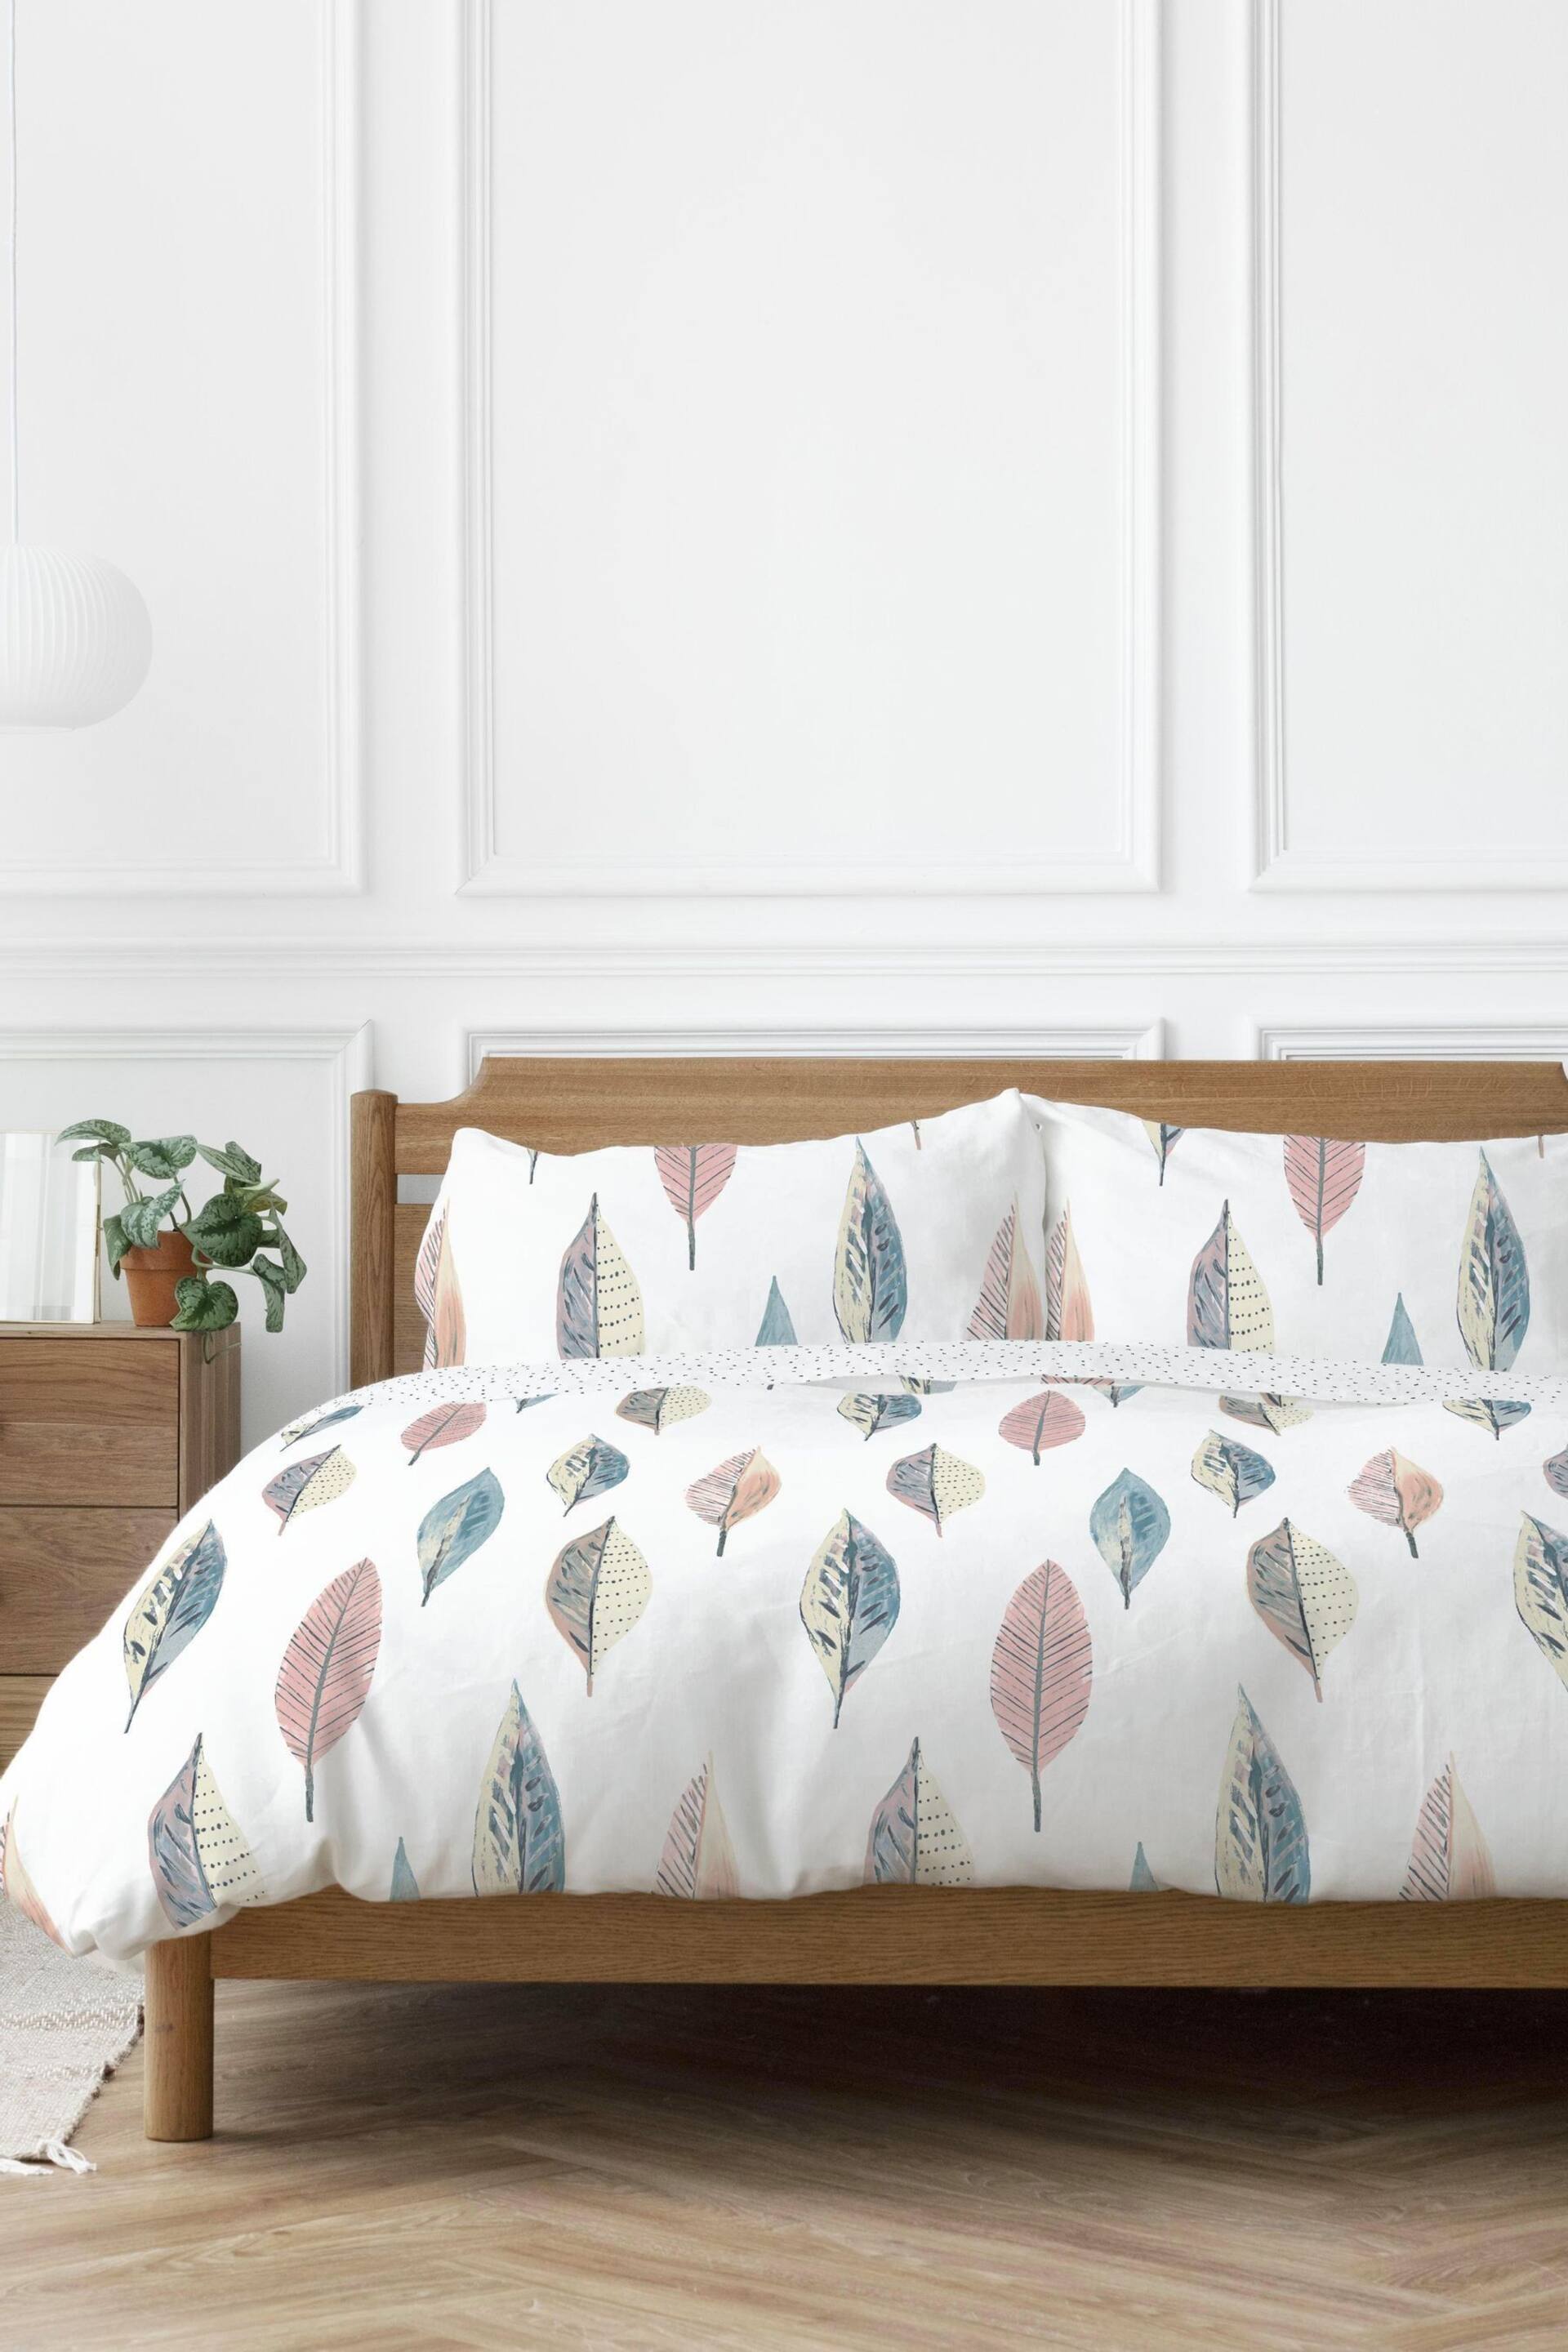 Copenhagen Home Pastel Flynn Duvet Cover & Pillowcase Set - Image 1 of 2